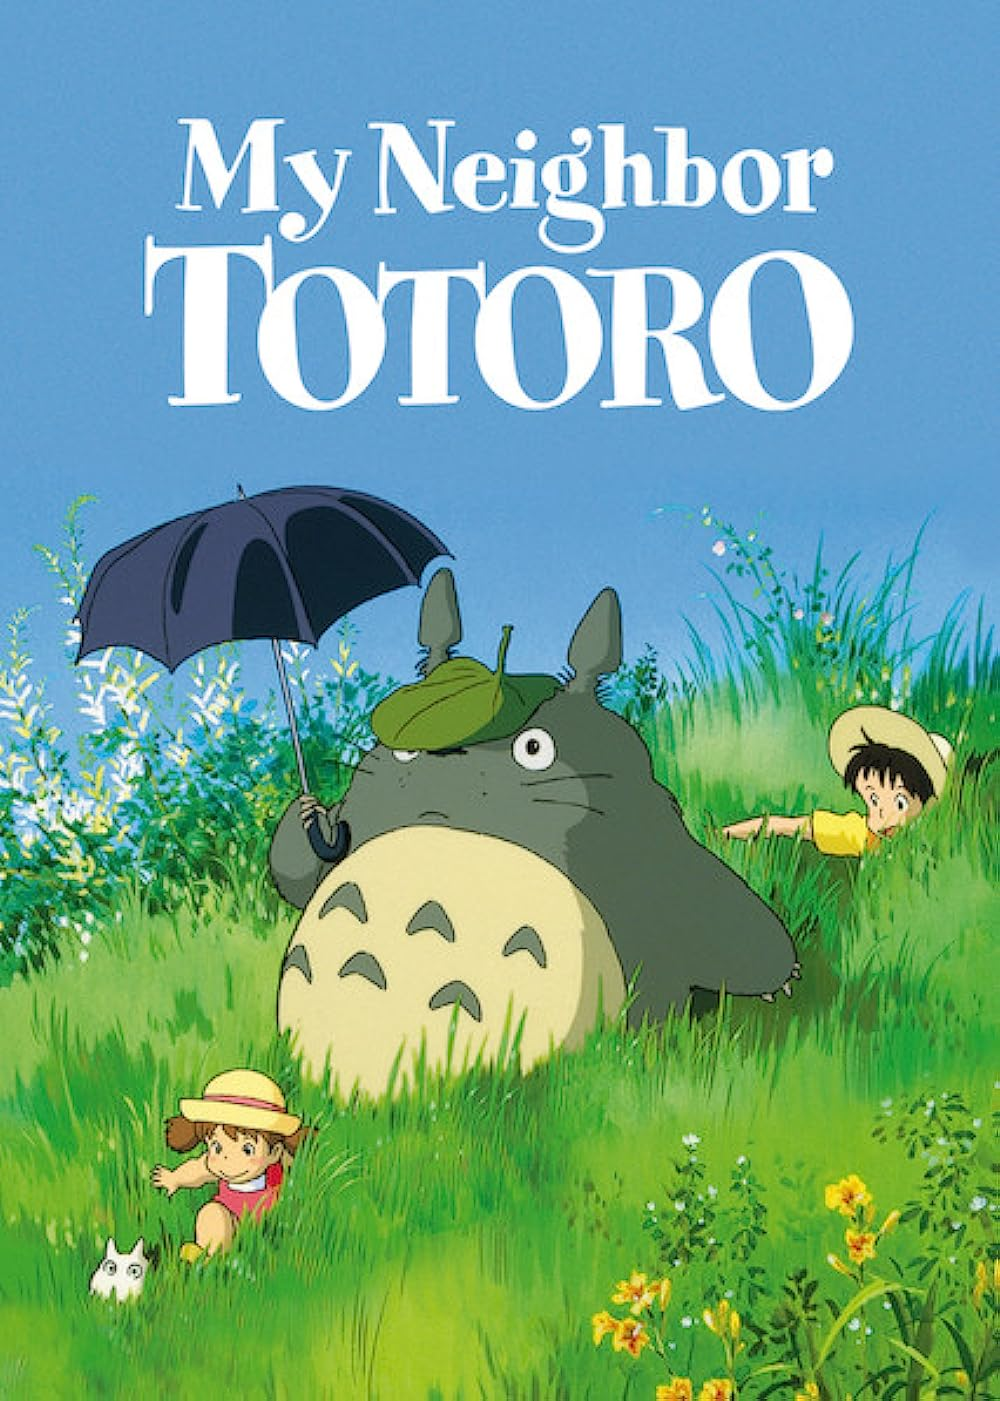 Best Christmas animated movies - My Neighbor Totoro